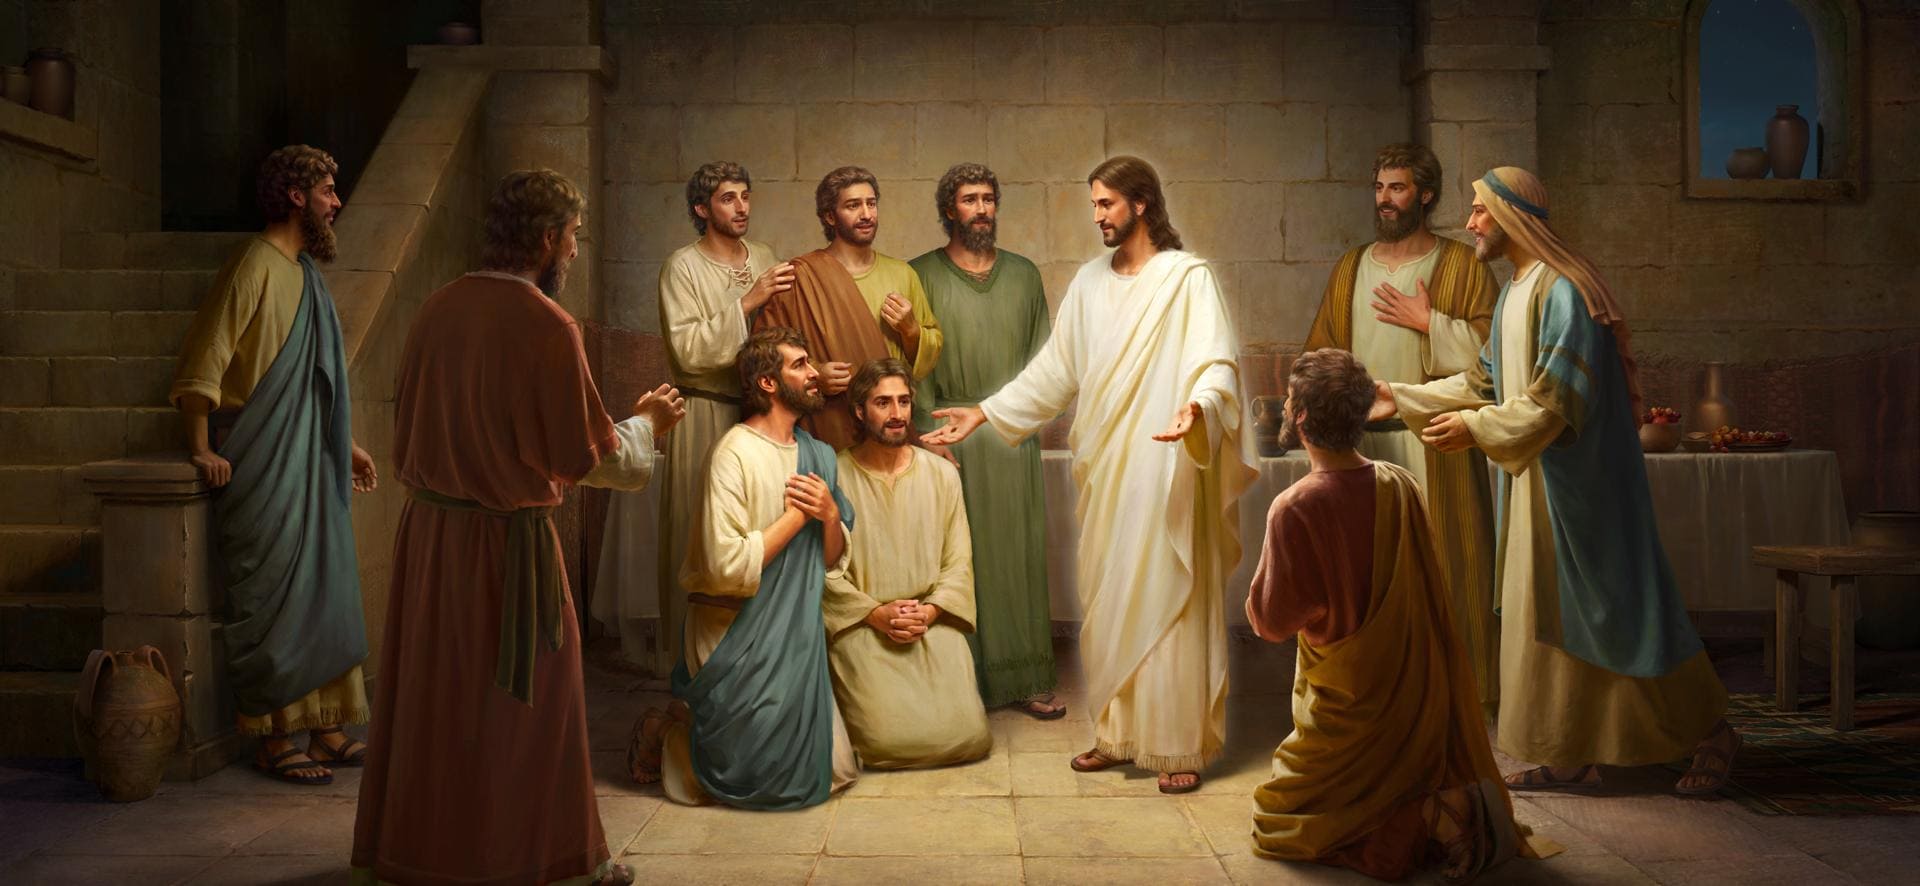 كلمات الرب يسوع لتلاميذه بعد قيامته